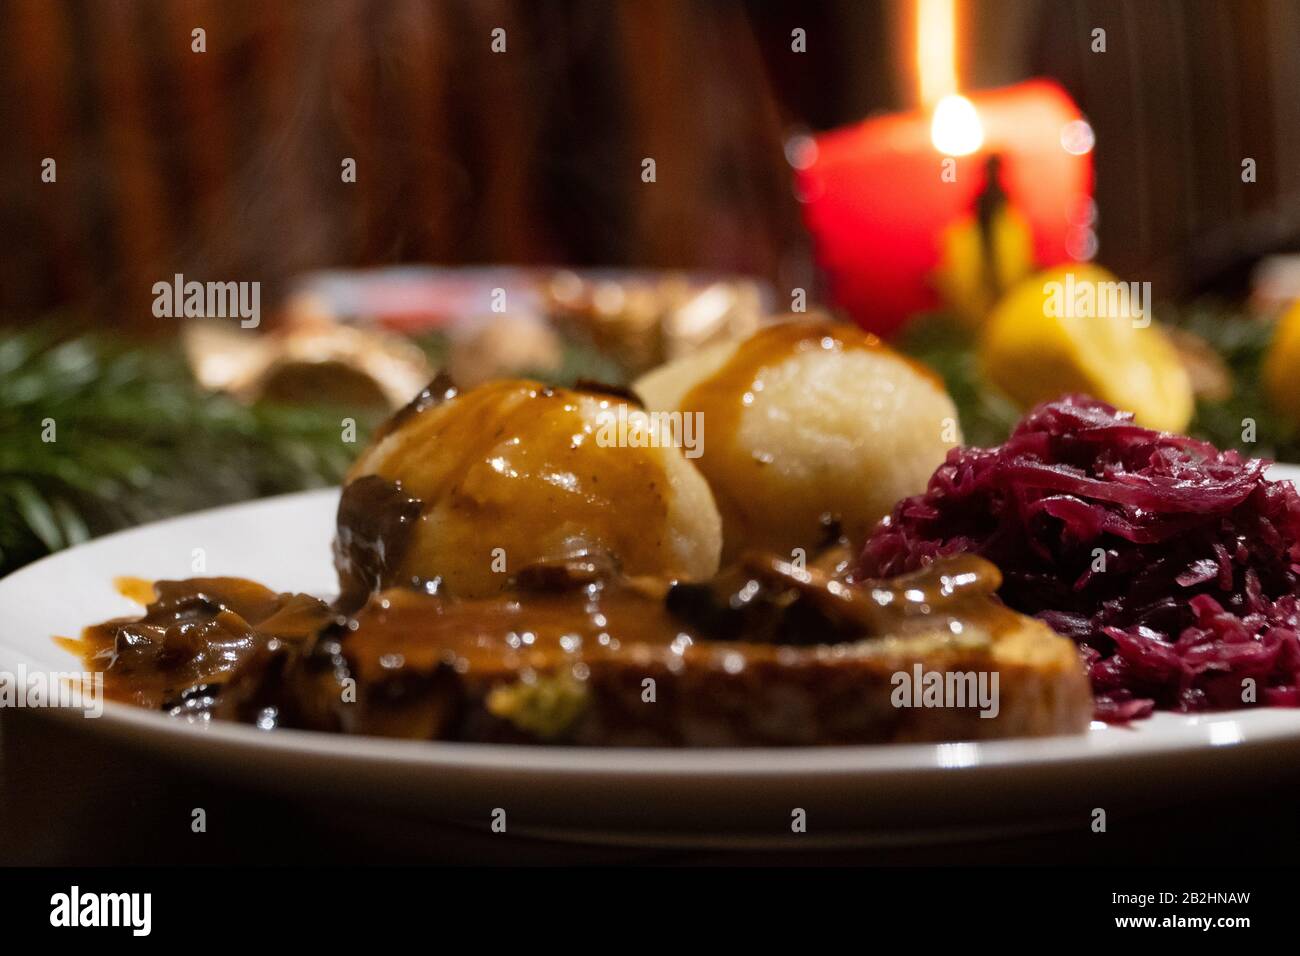 Nahaufnahme eines Tellers mit zwei Knödel, Rotkohl, Braten und brauner Soße - Vegan-Weihnachtsessen Stockfoto